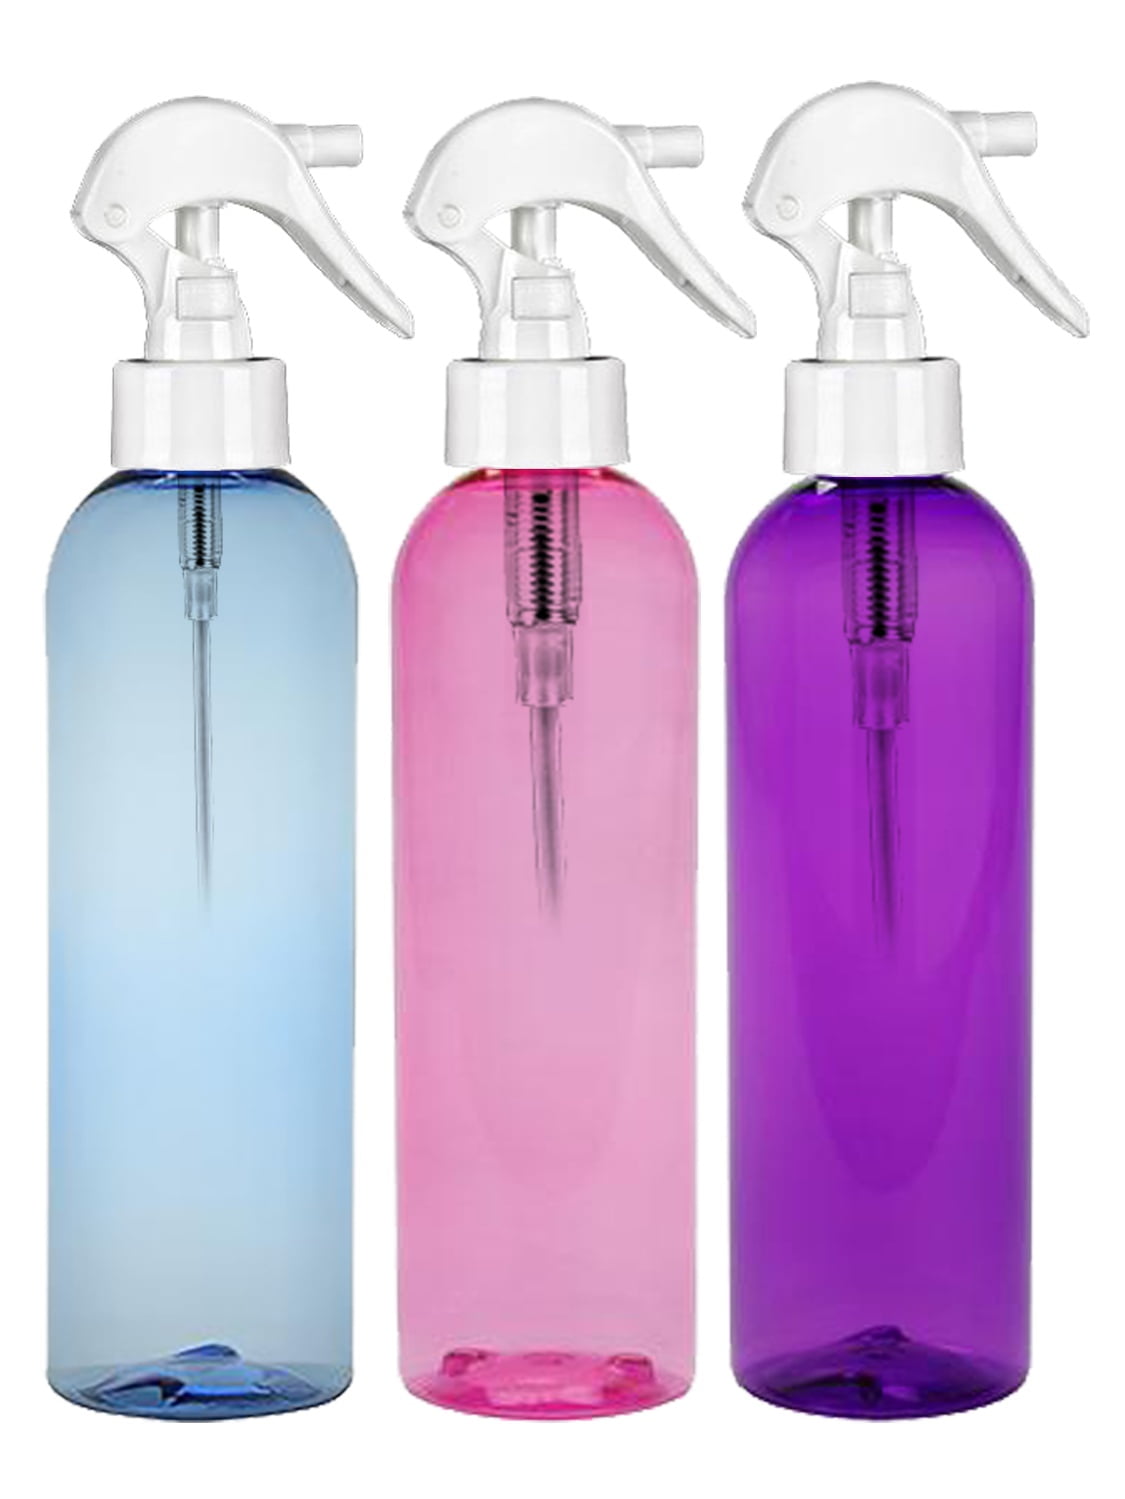 8 oz plastic spray bottles